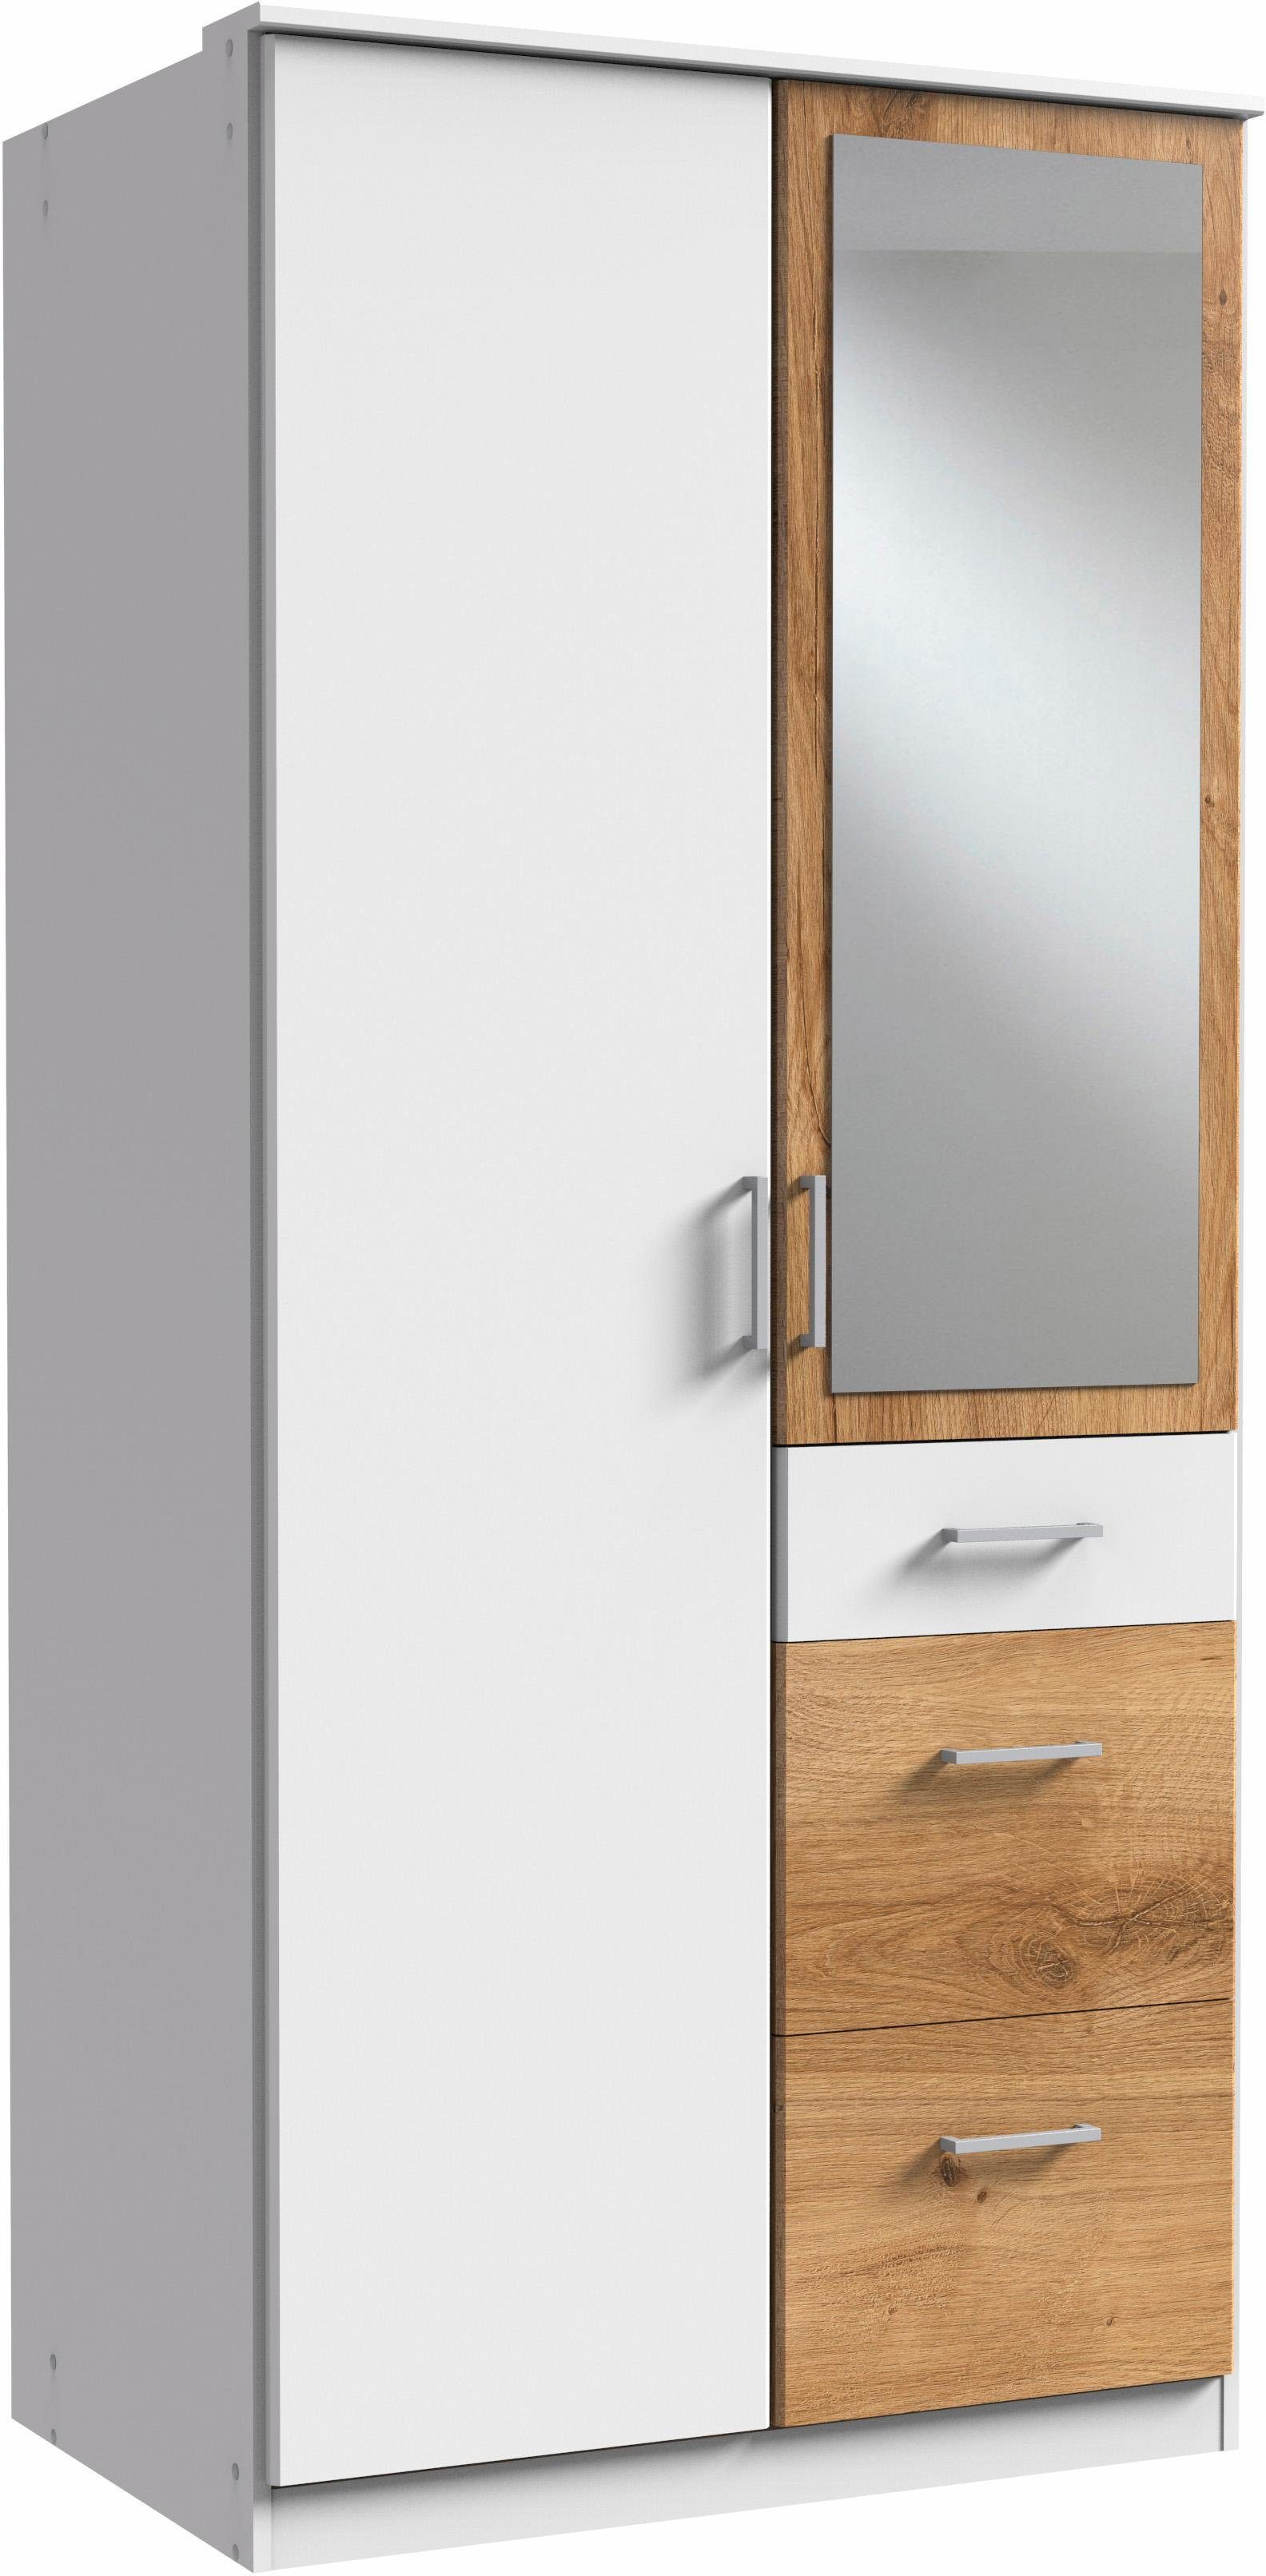 Wimex Kleiderschrank Click mit Spiegel weiß/plankeneichefarben